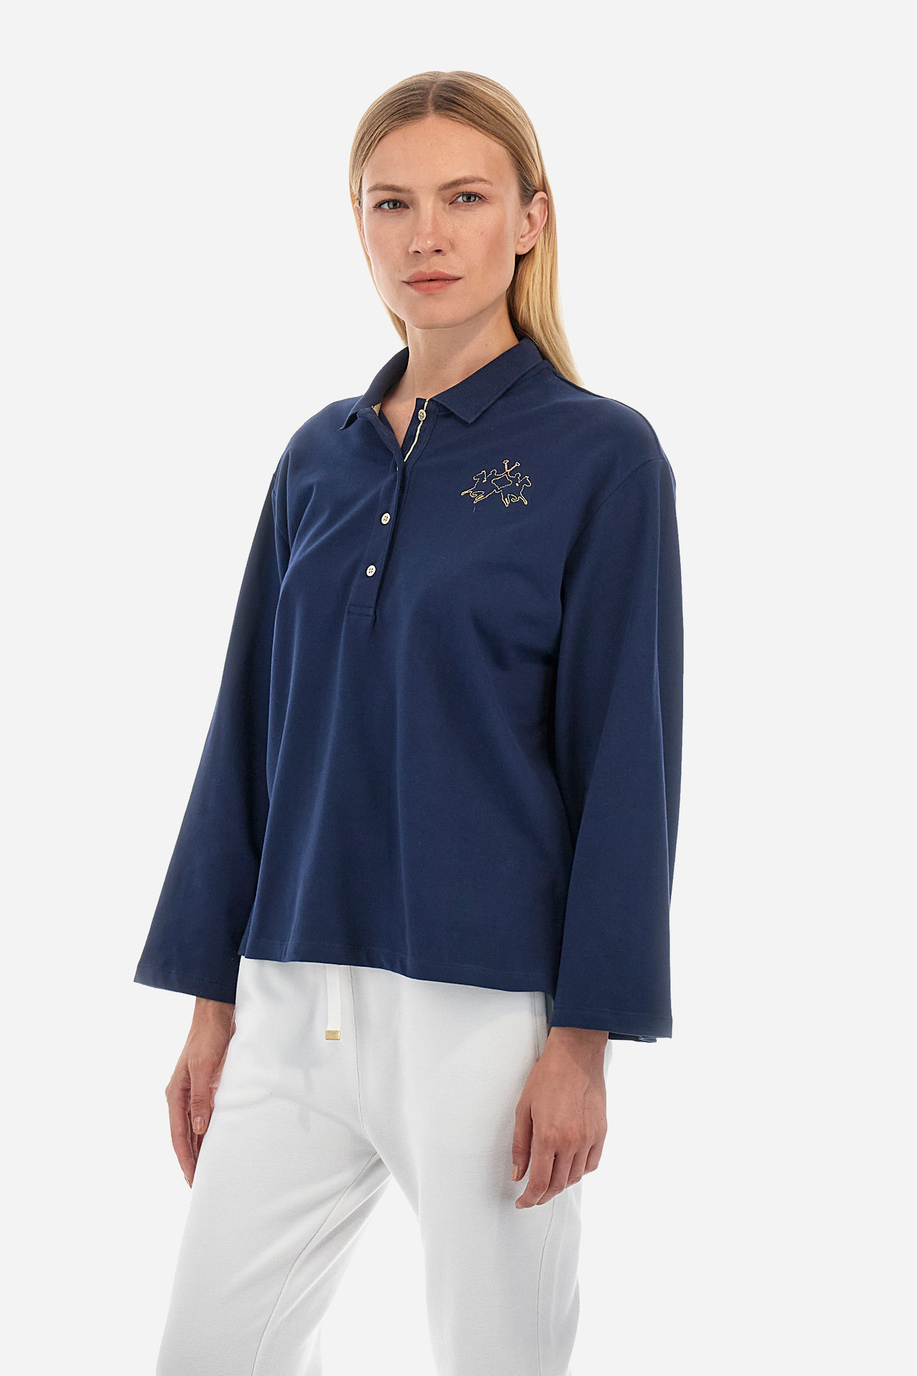 Damen -Poloshirt regular fit - Welch - New Arrivals | La Martina - Official Online Shop